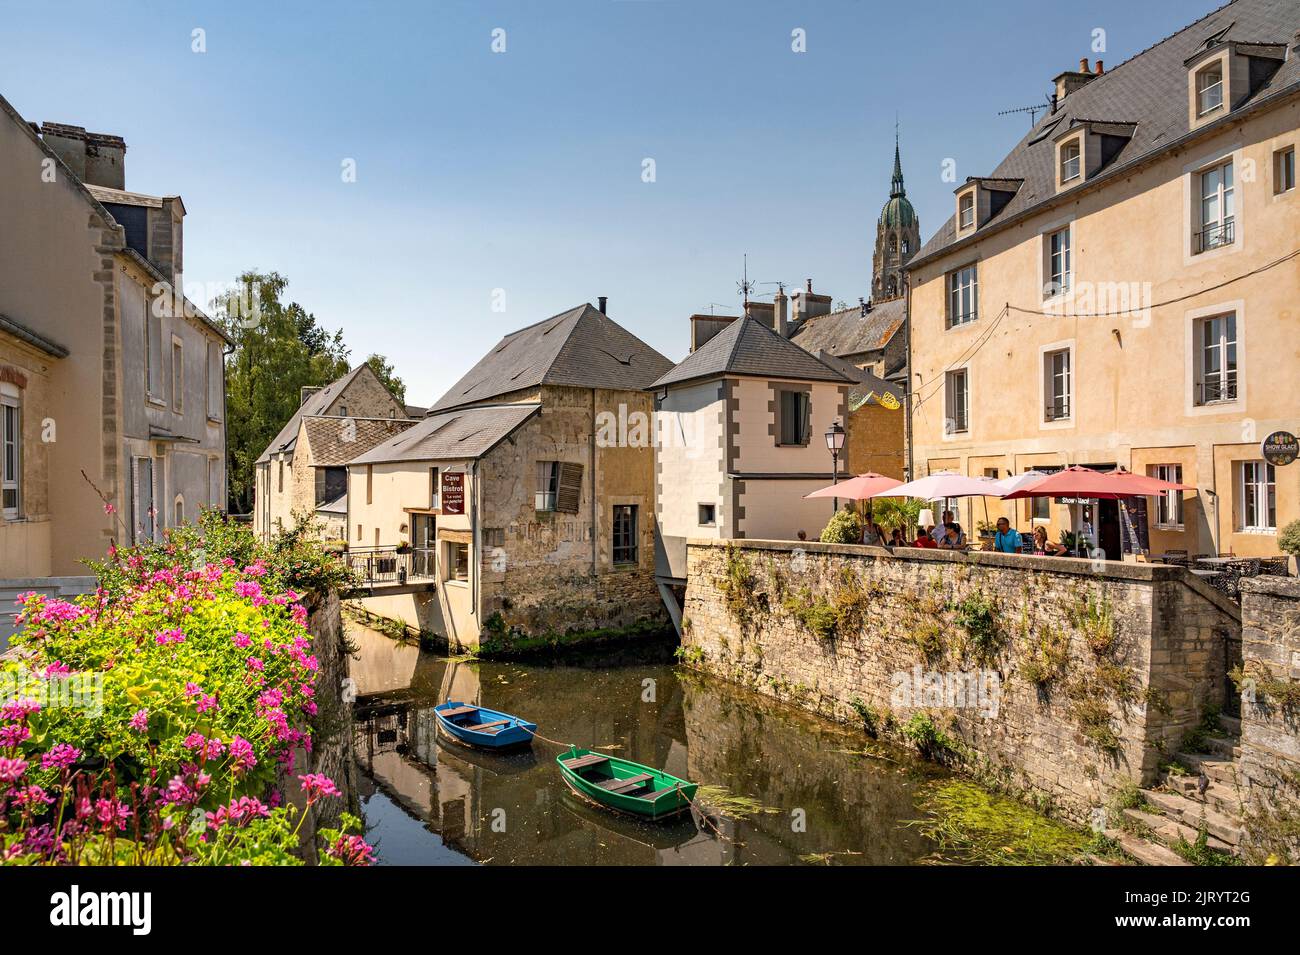 El centro de la ciudad vieja a lo largo del río Aure de Bayeux, Francia Foto de stock